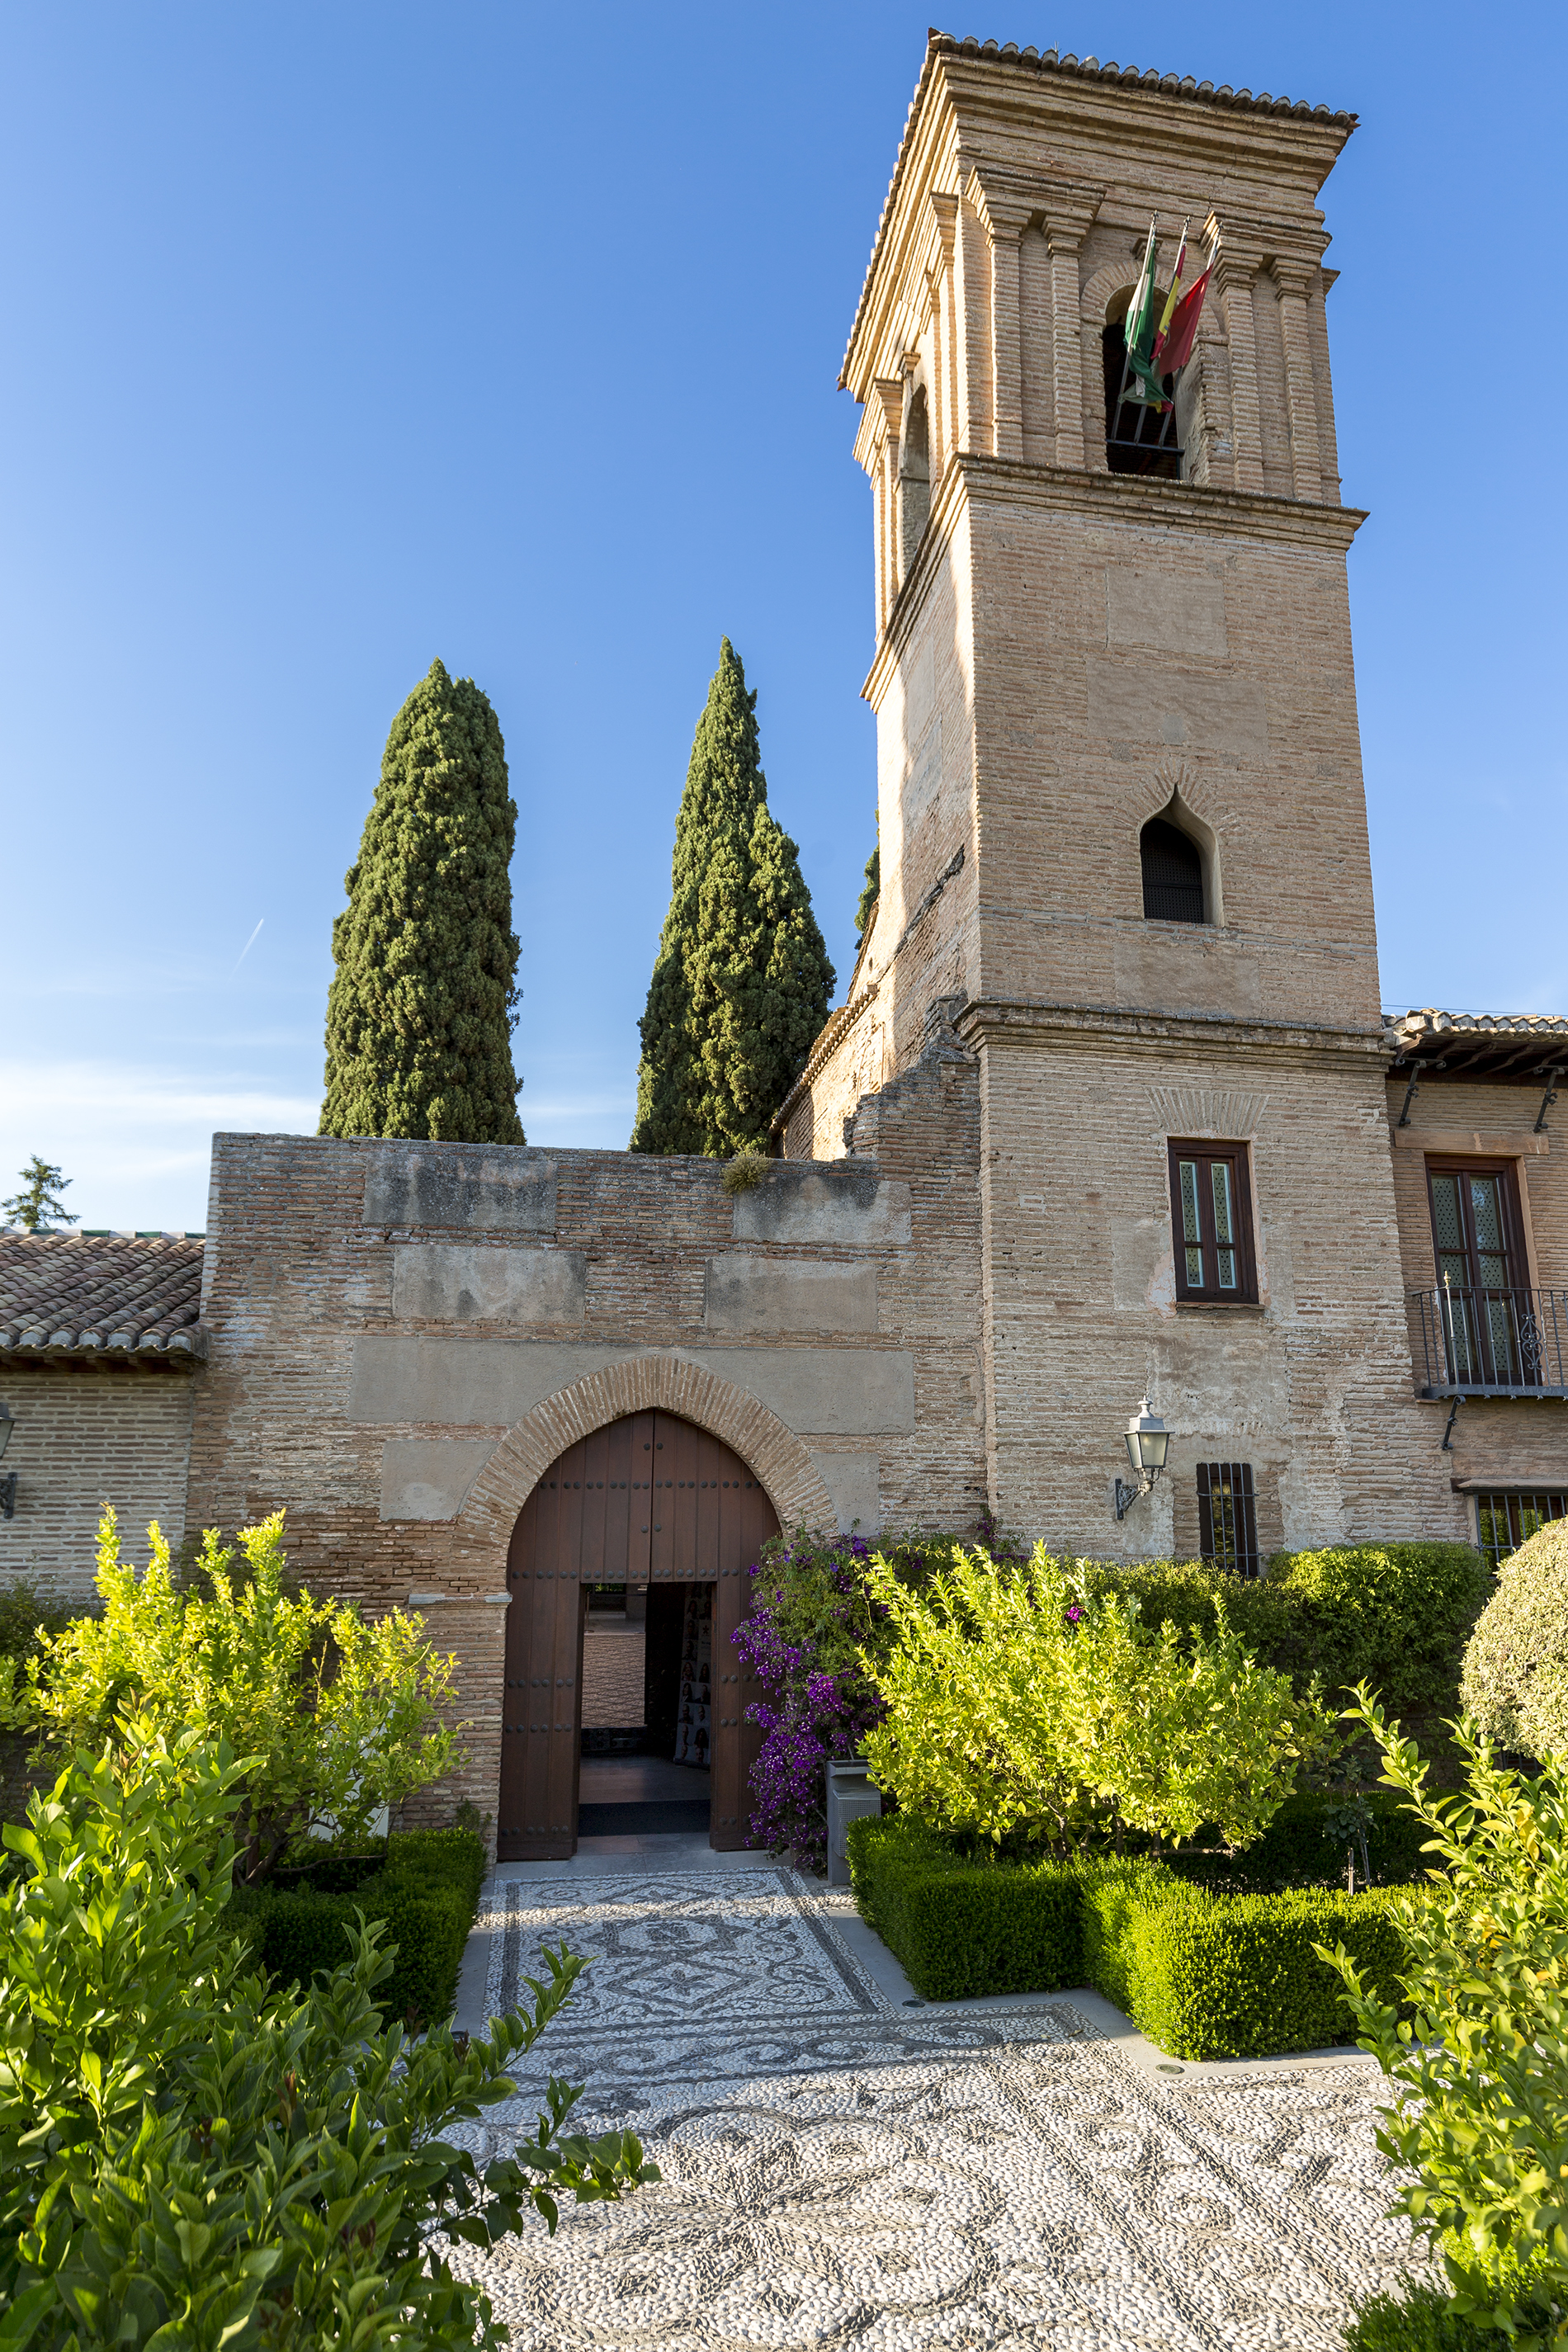 Entrada y Torre del Alba del Parador de Granada